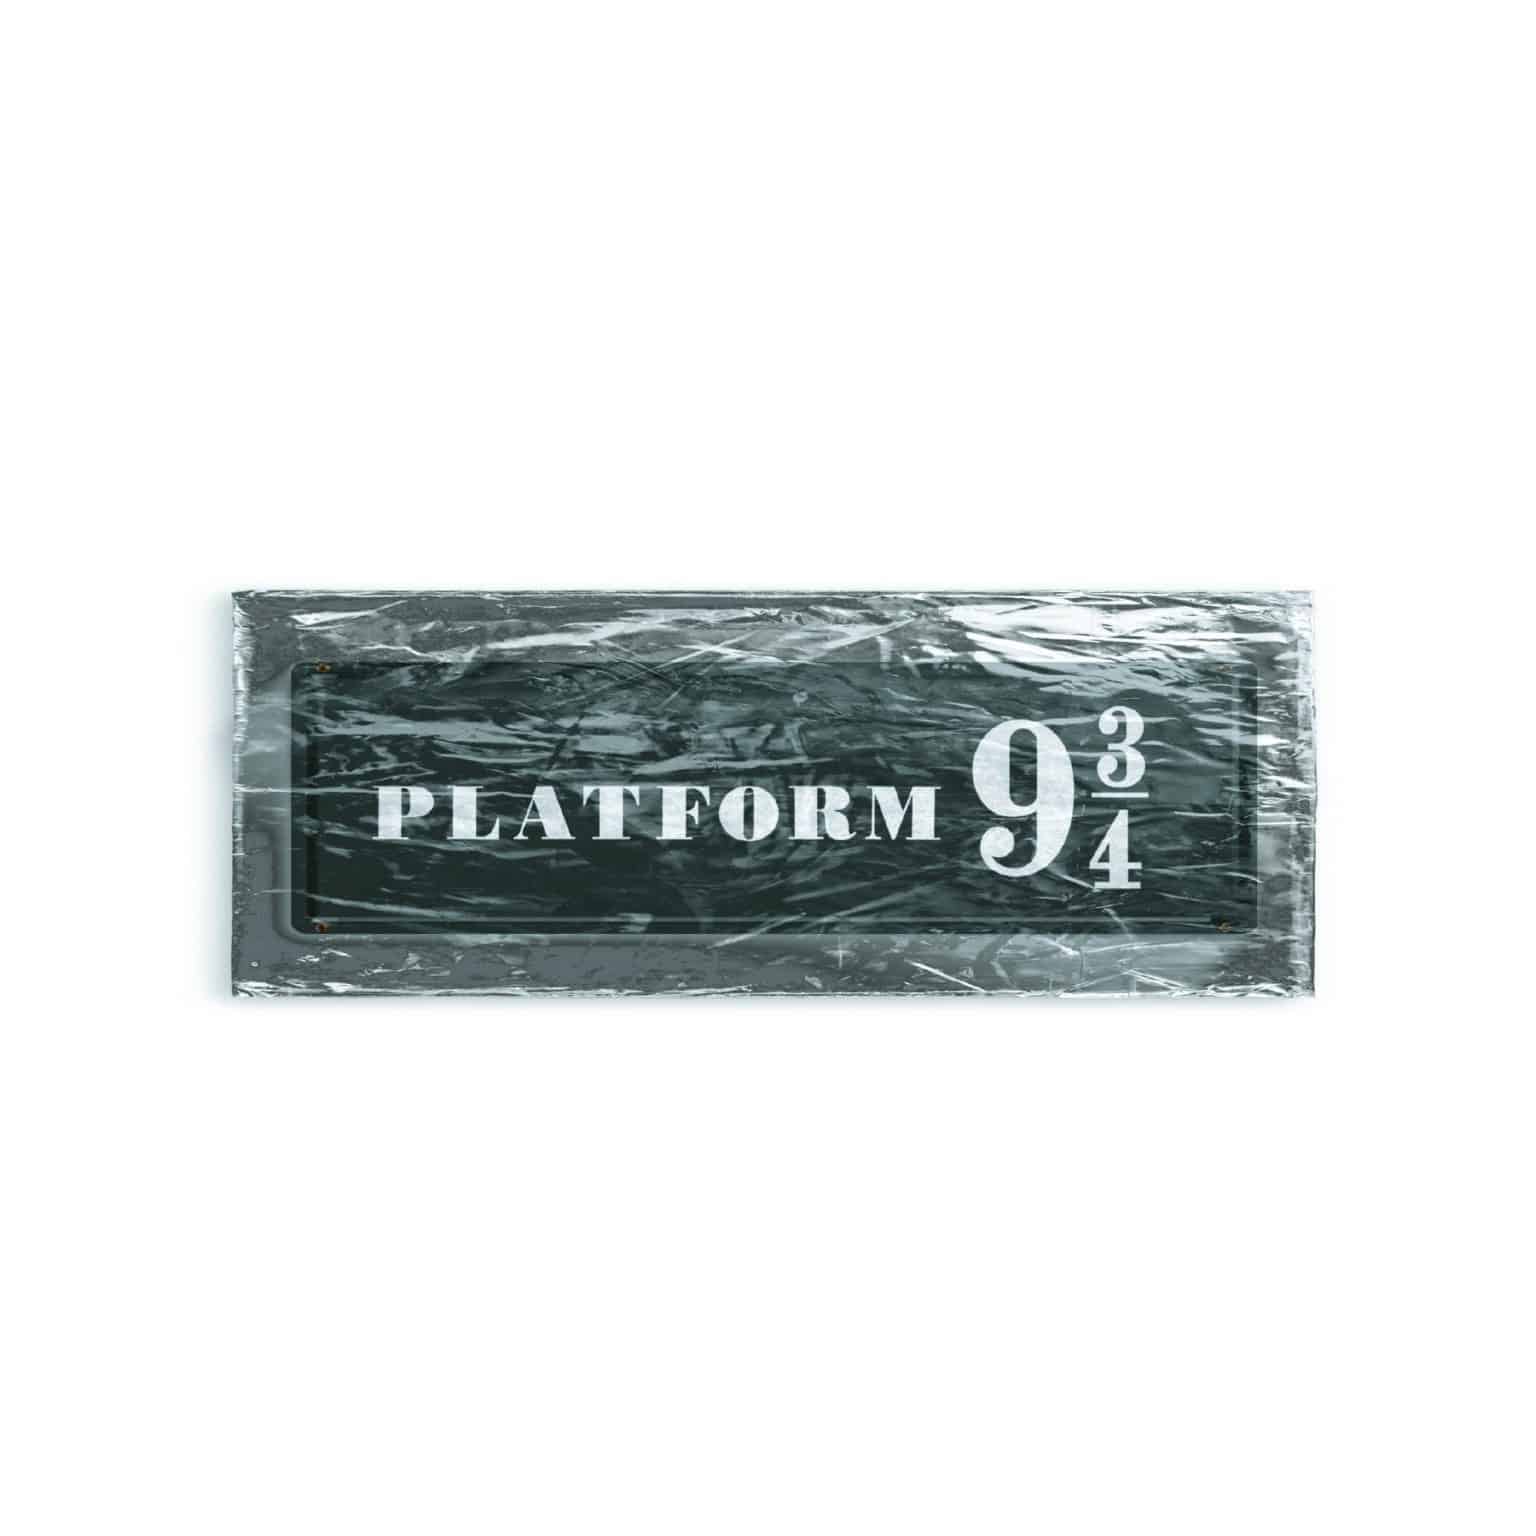 Platform3 Sihir Dükkanı - Tüm Harry Potter Ürünleri